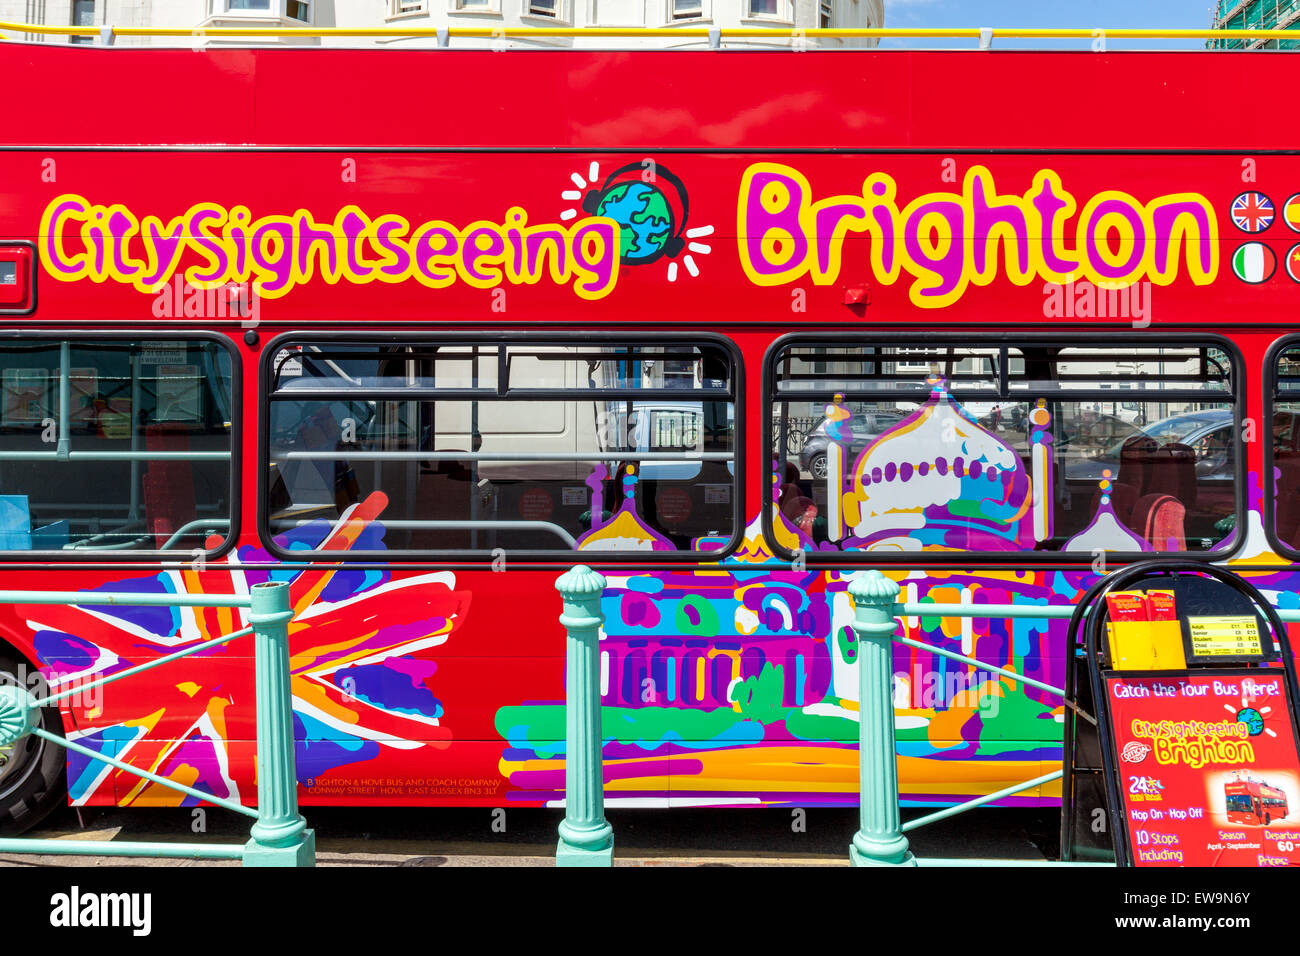 City Sightseeing Tour Bus On Brighton Seafront, Brighton, England Stock Photo